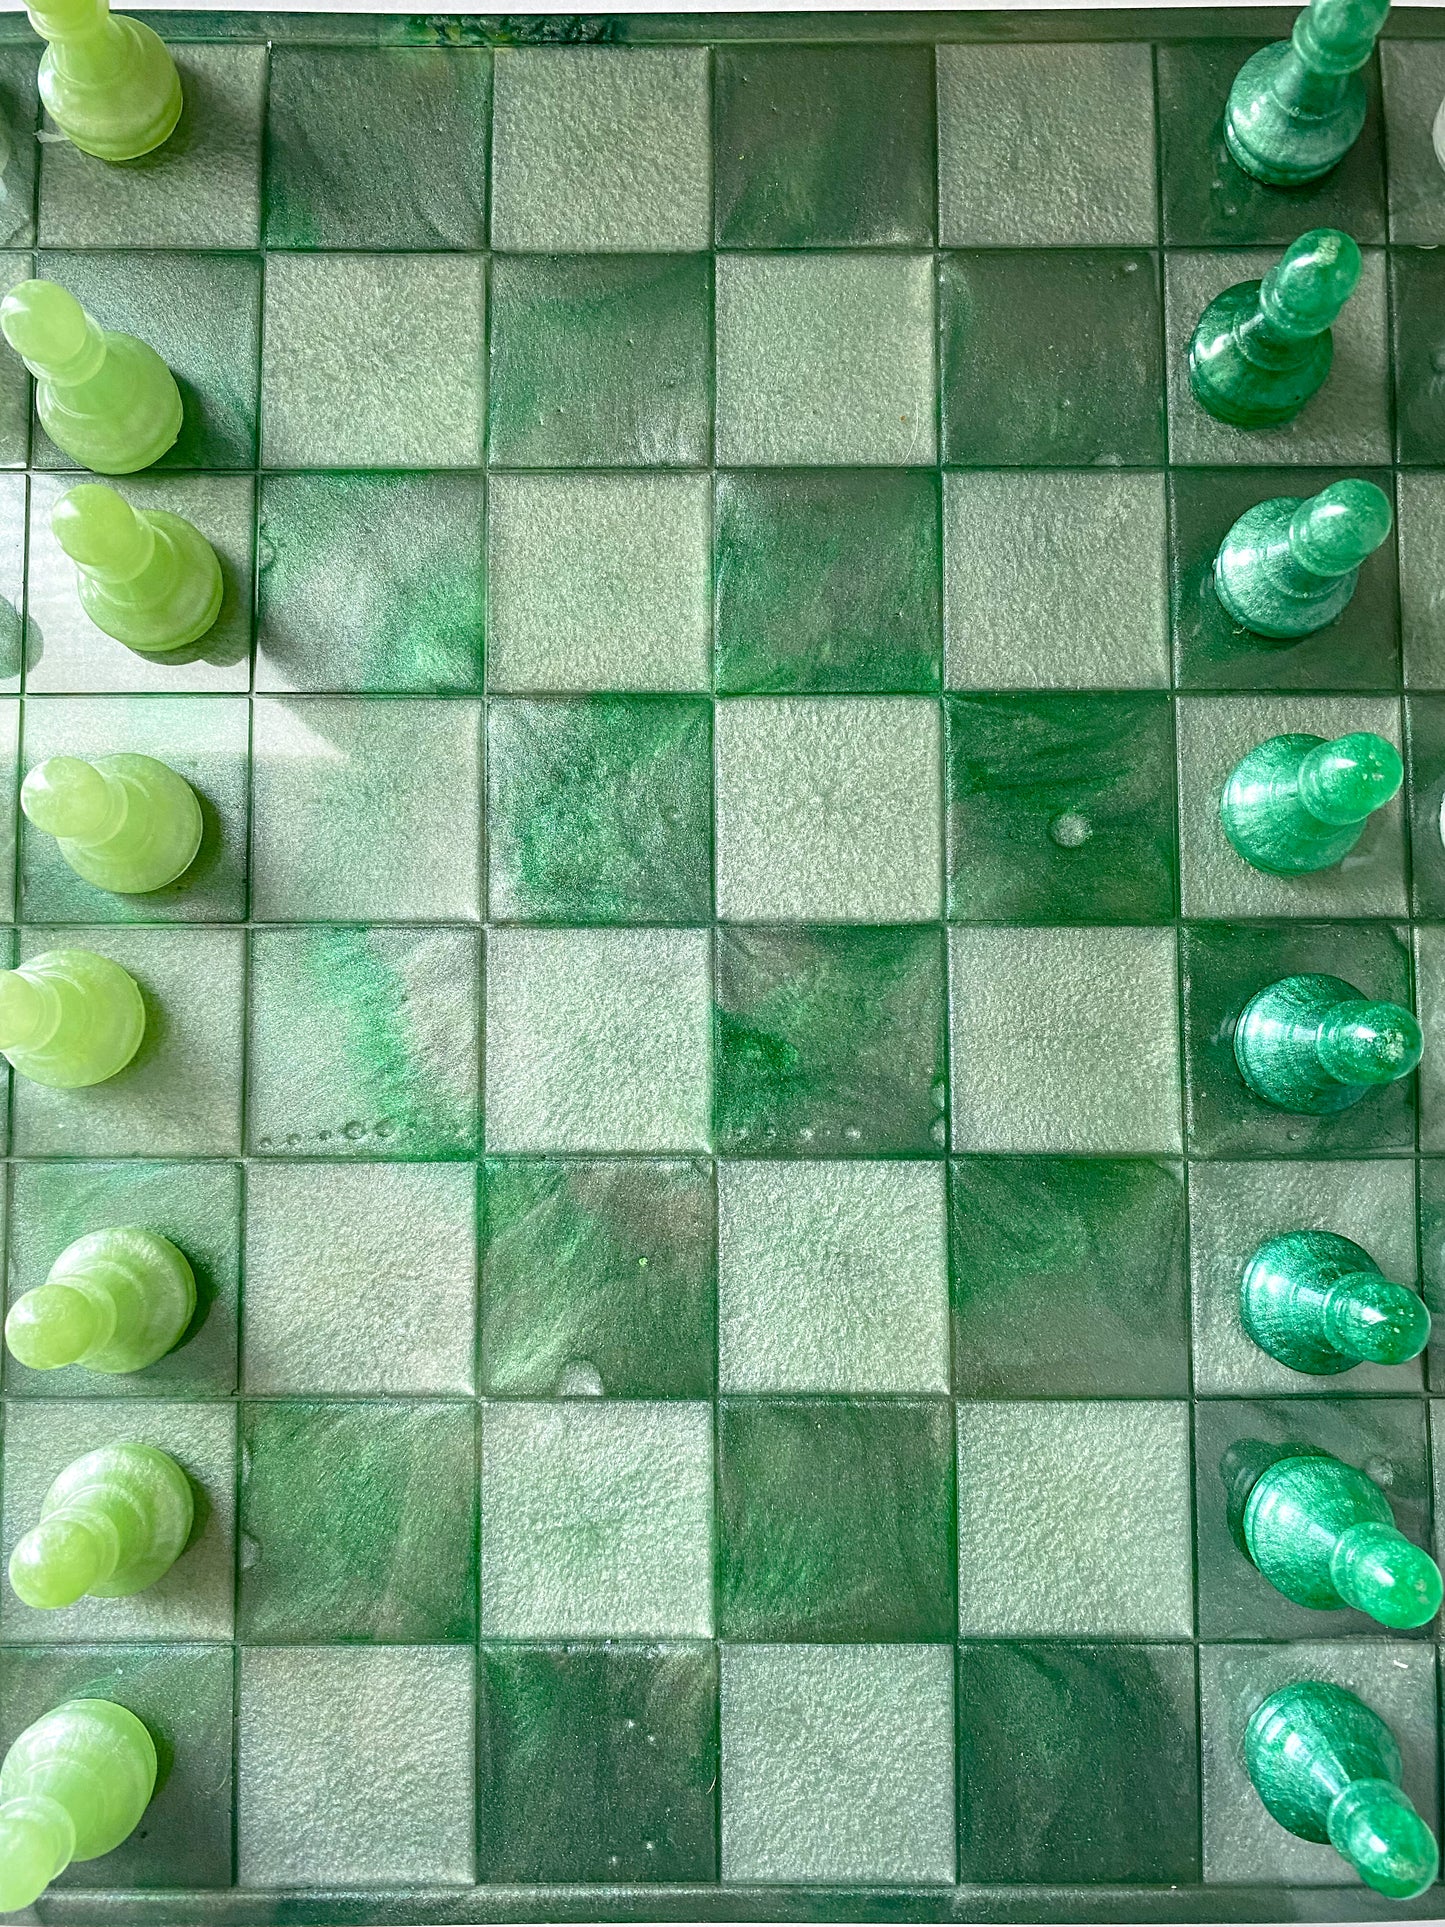 Handmade frog inspired resin chess set